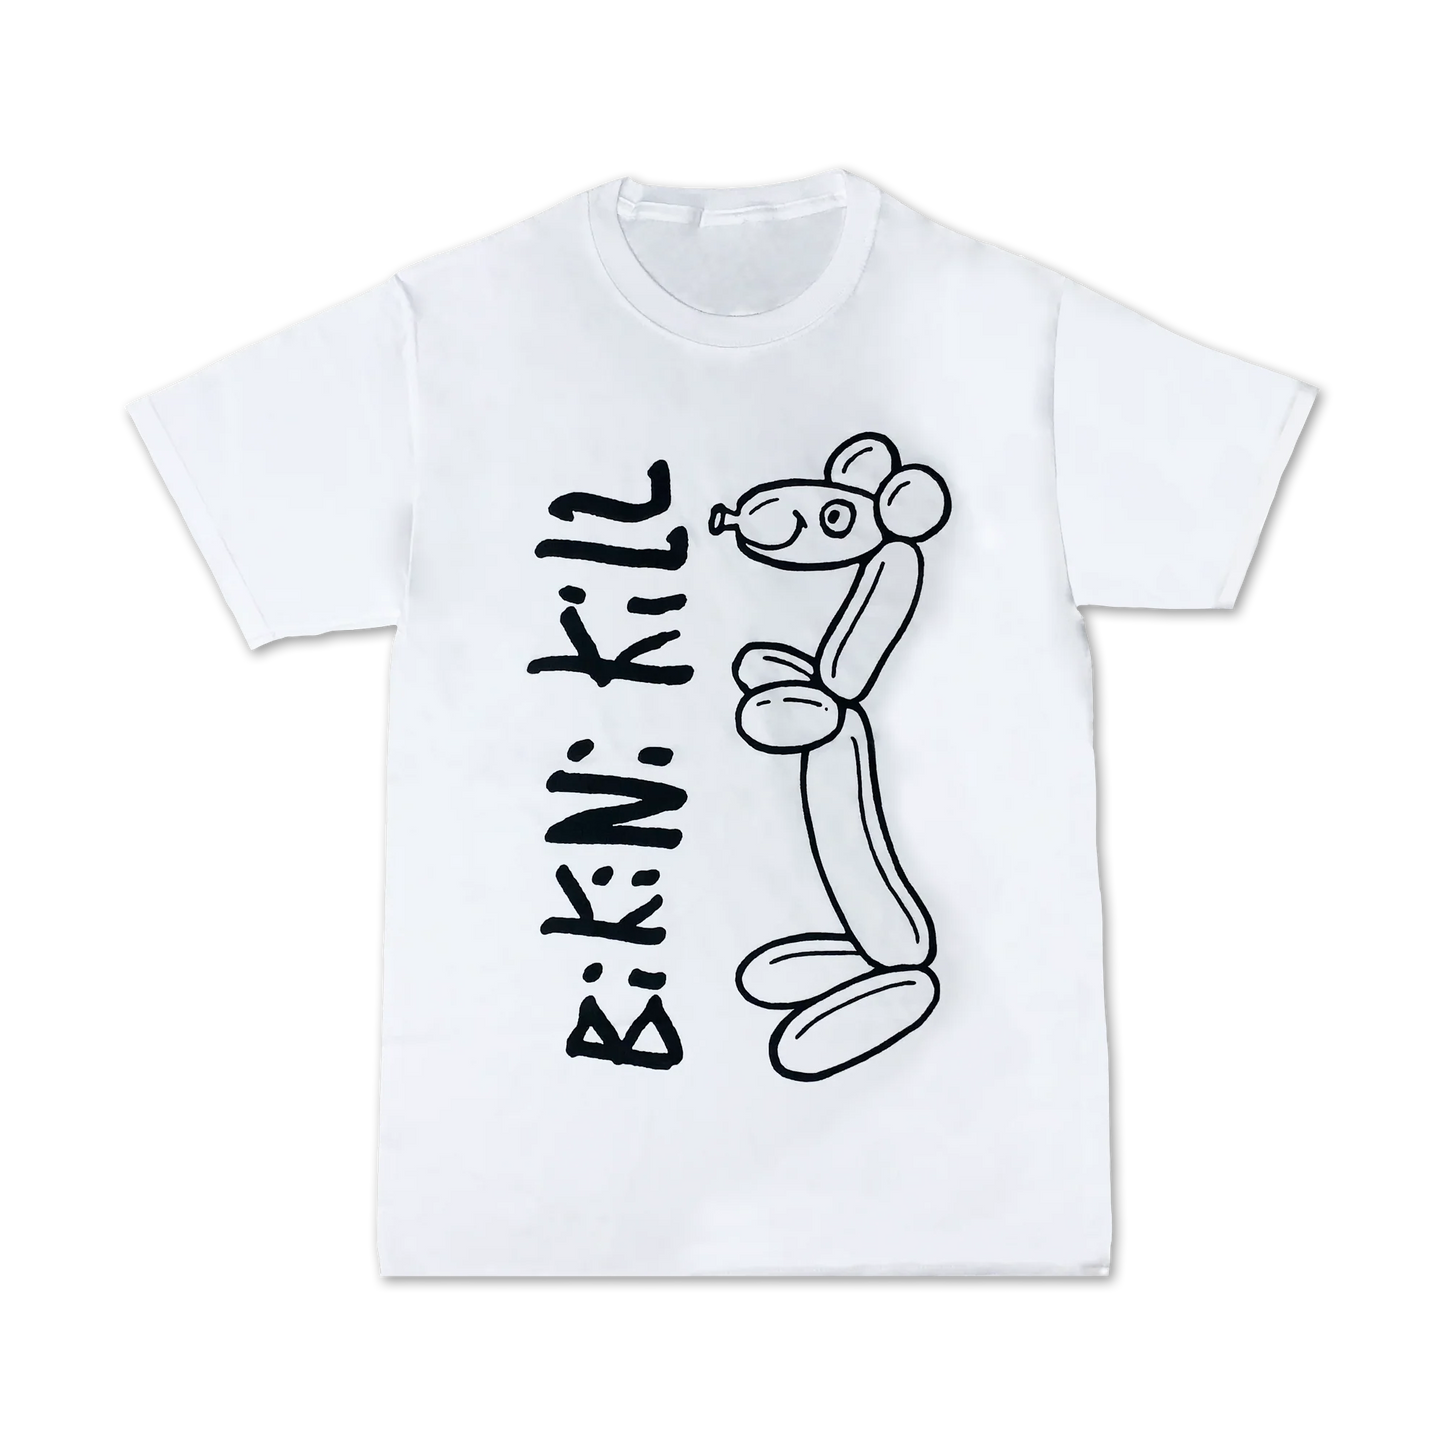 Bikini Kill Wiener Dog T-shirt